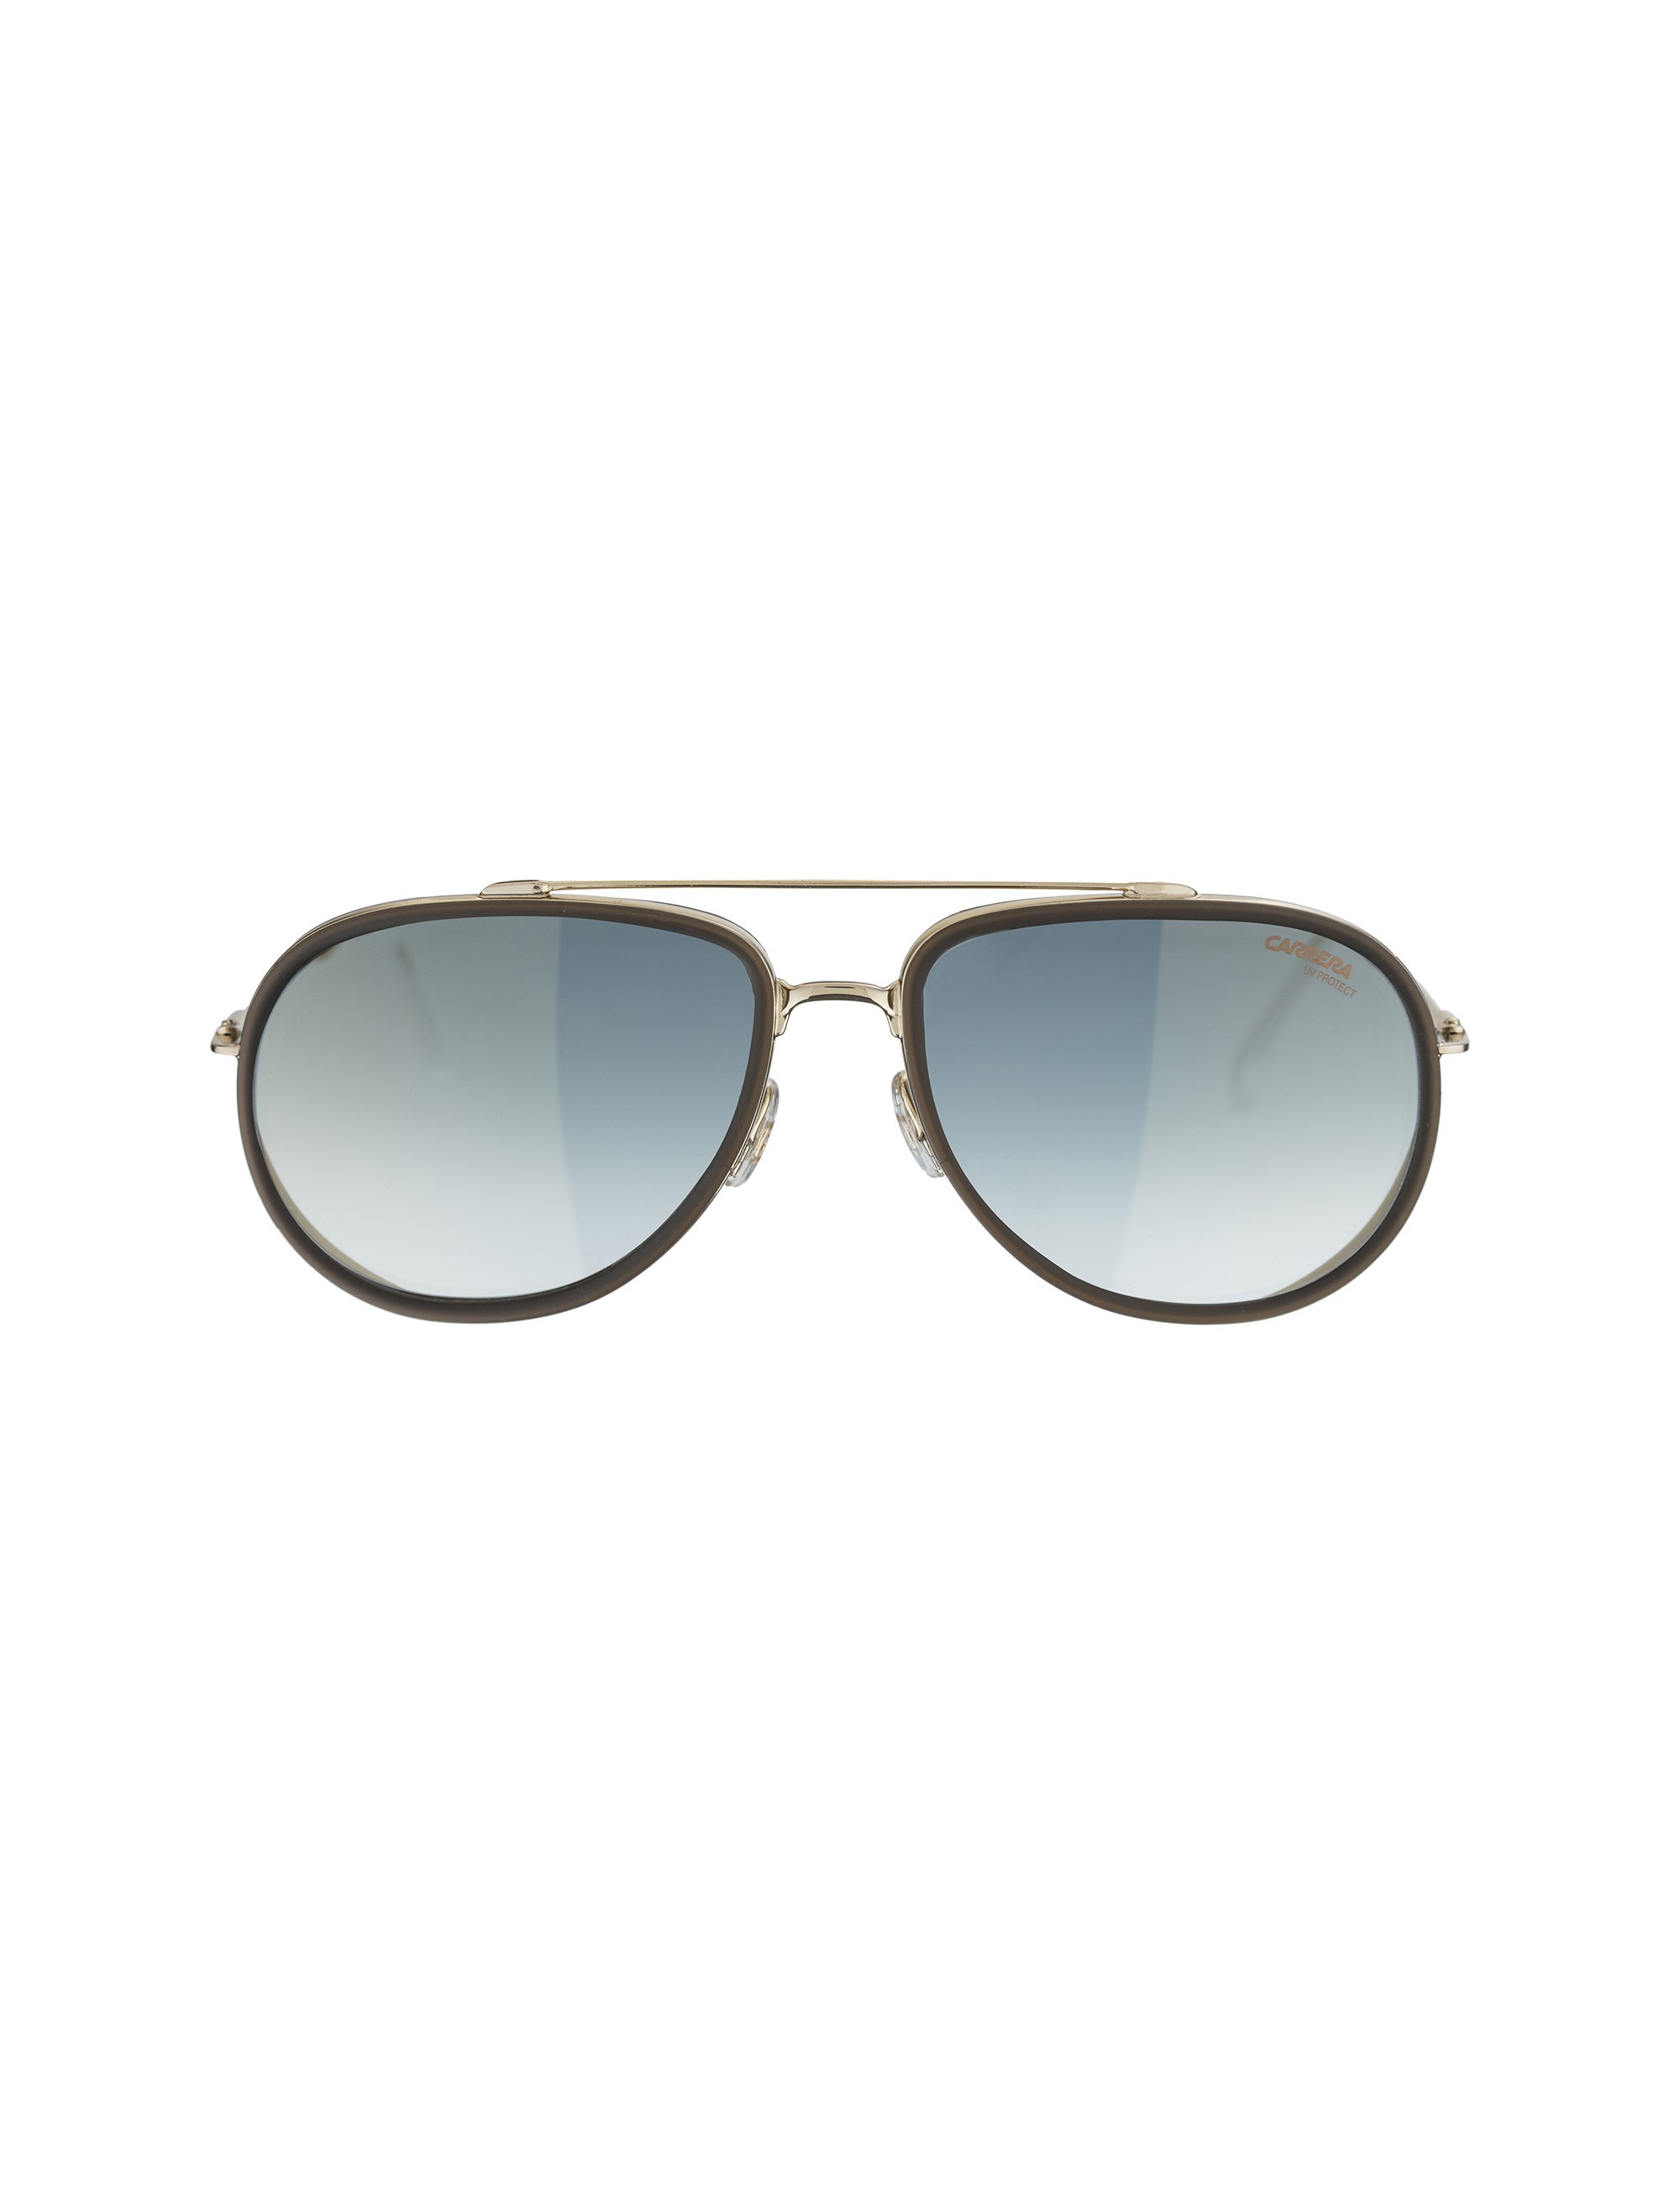 عینک آفتابی خلبانی بزرگسال - کاررا - طلايي - 1